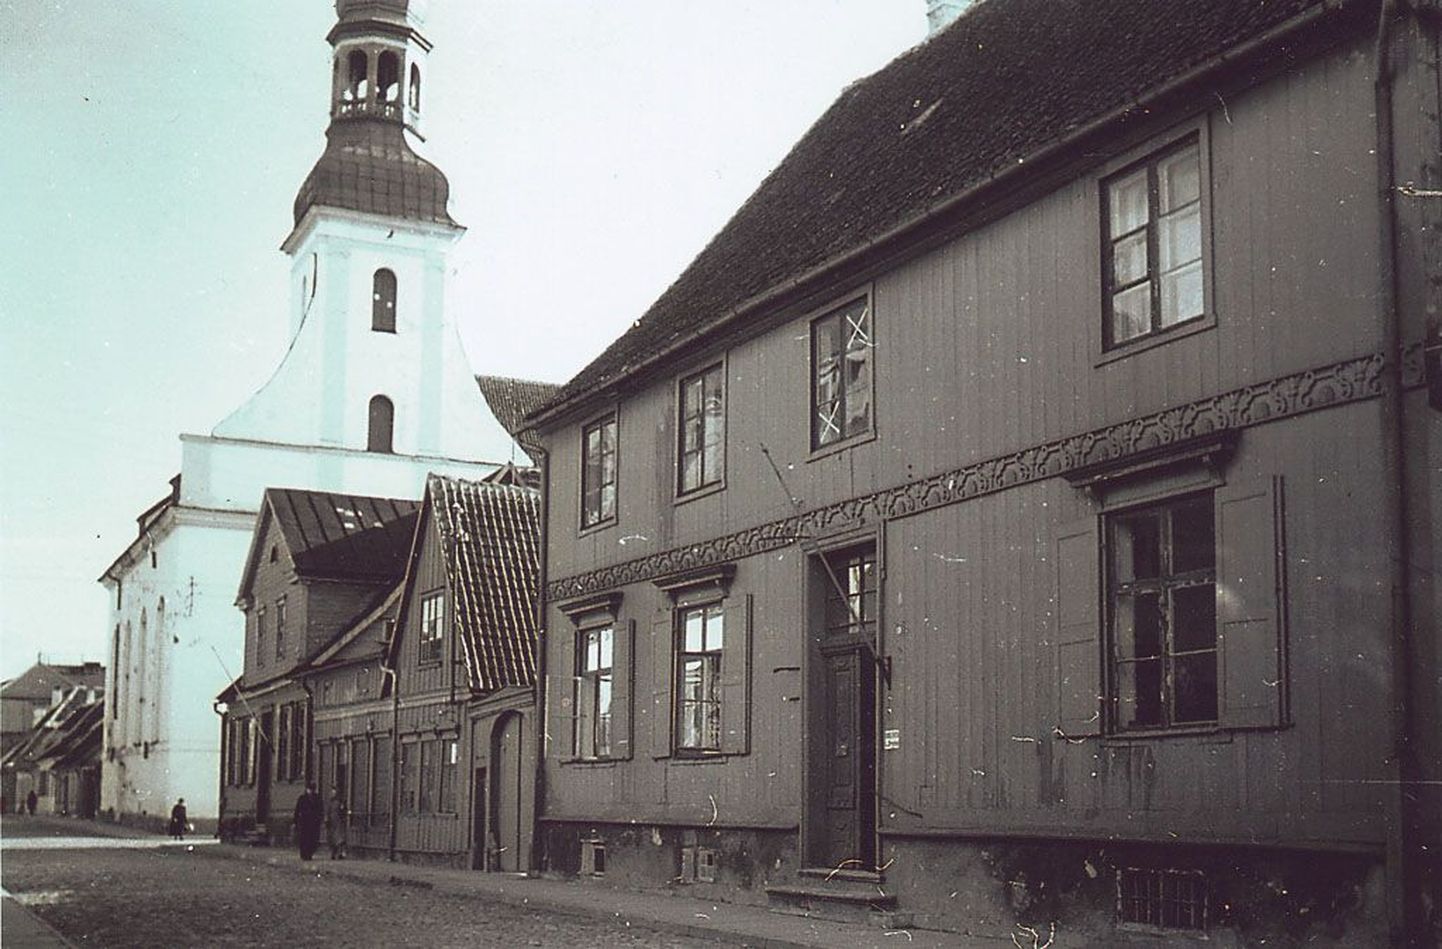 Majas, kus praegu asub populaarne söögikoht restoran Edelweiss, töötas 1933. aastast natsionaliseerimiseni Pärnu Ühispank, mis kasvas välja 1930. aastal asutatud Pärnu Hoiu- ja Laenukassast.